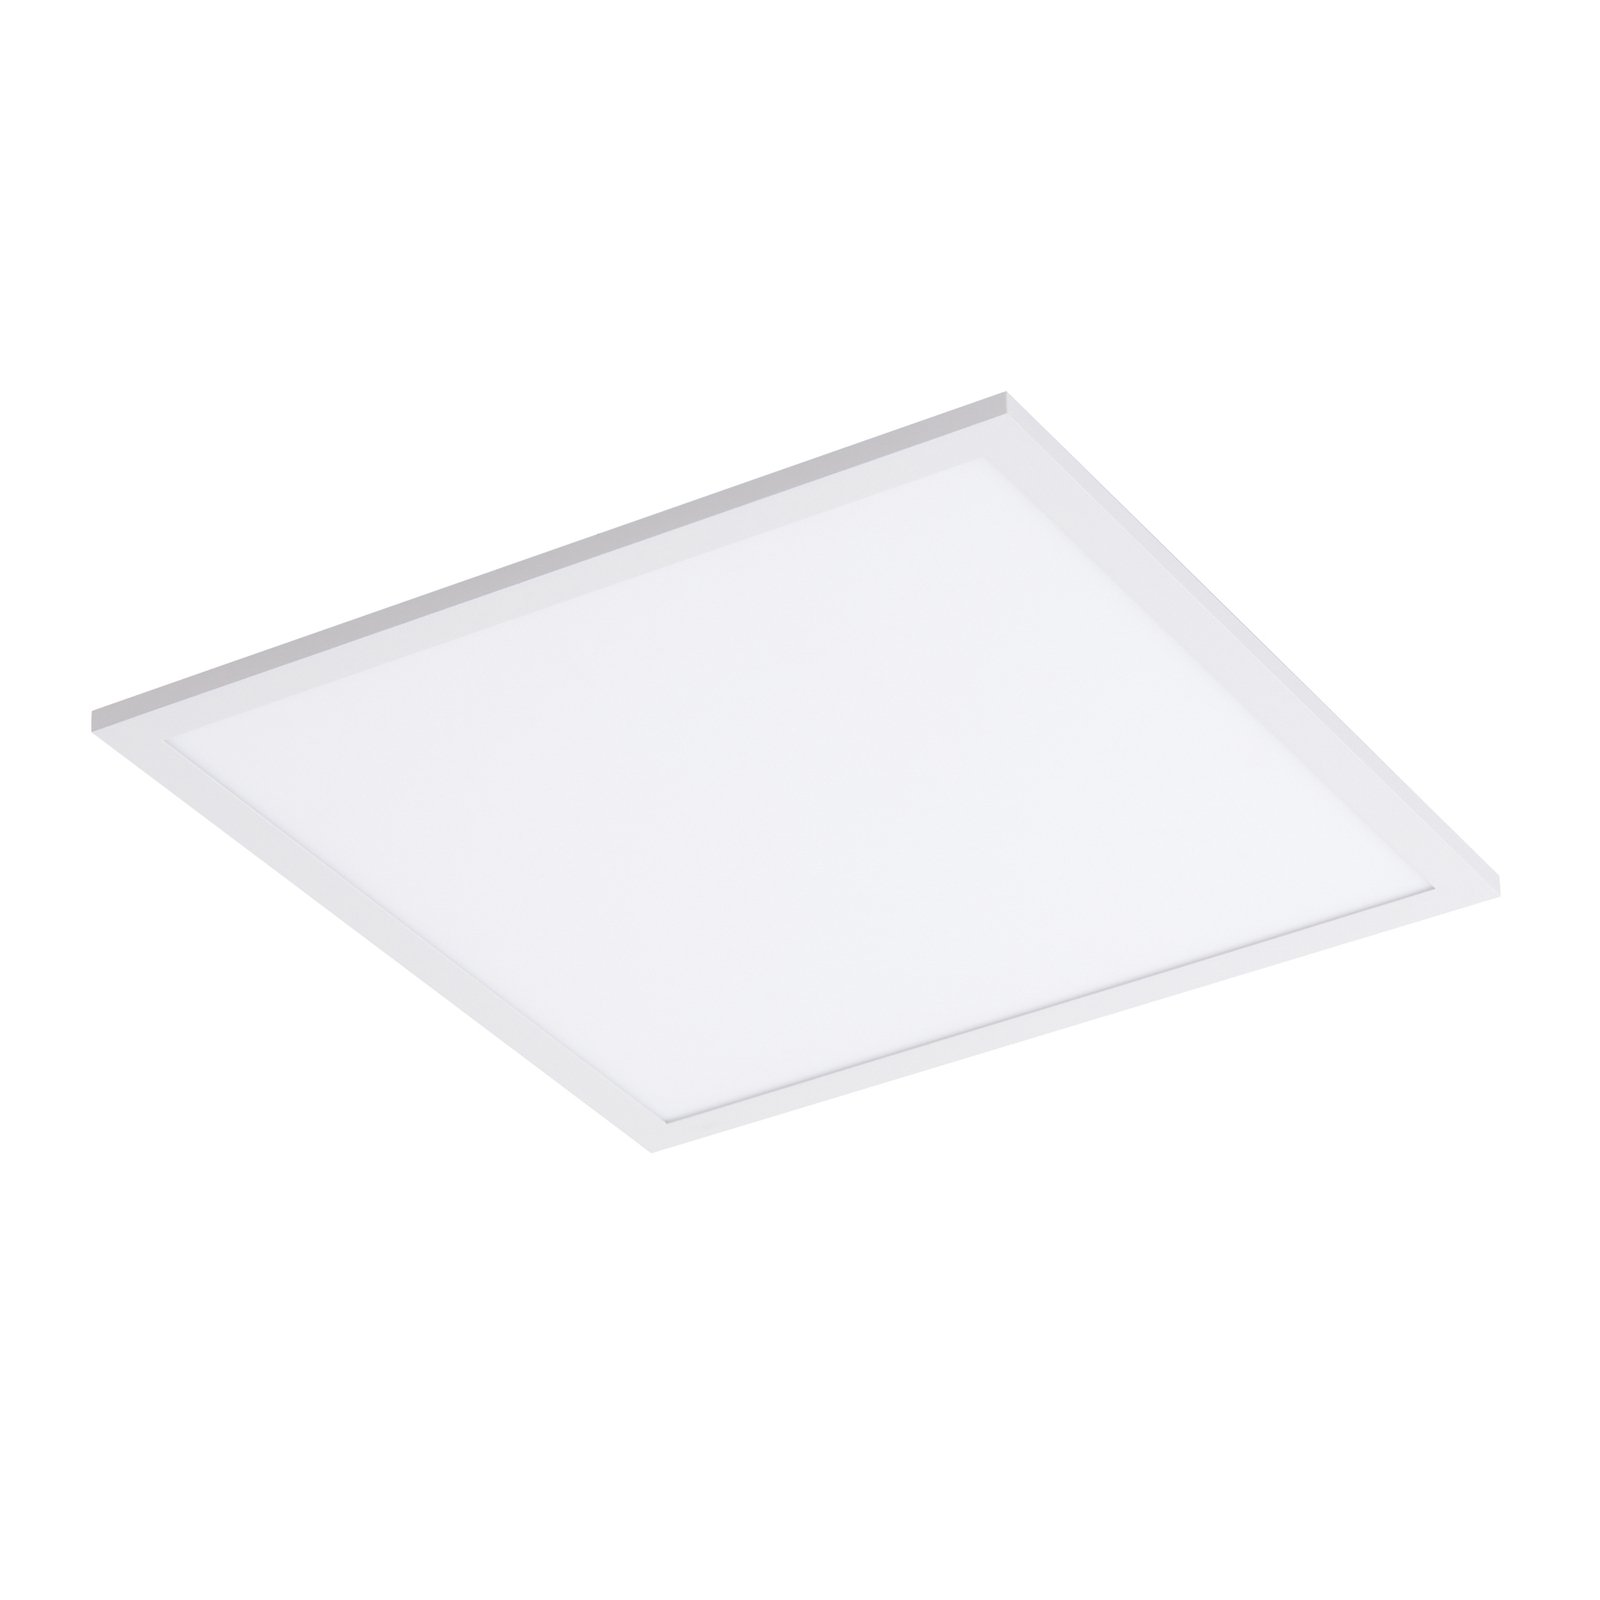 Laminátový panel Lindby LED, bílý, 39,5 x 39,5 cm